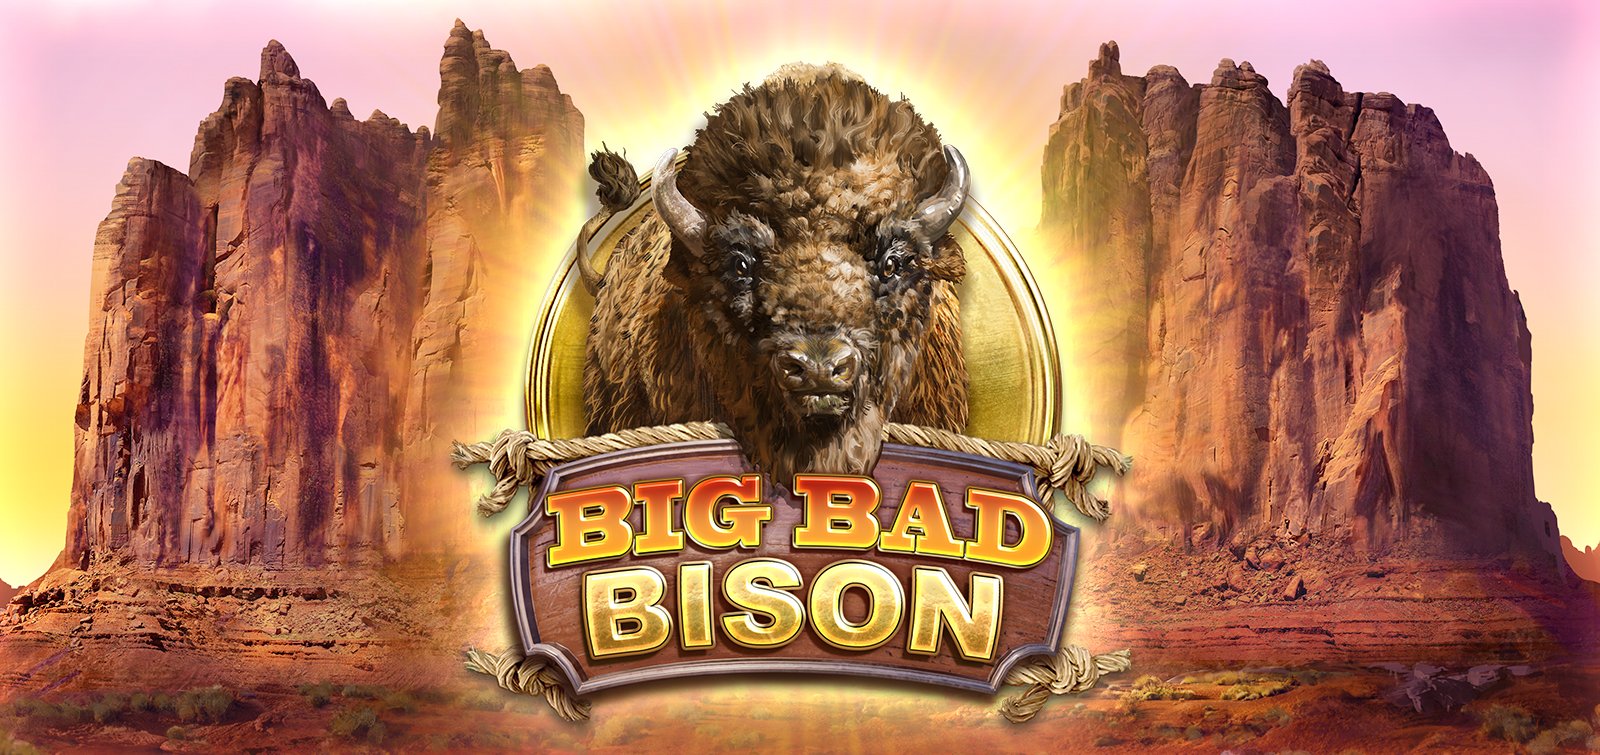 Review Slot Online Terbaik dari Big Time Gaming: Big Bad Bison Slot